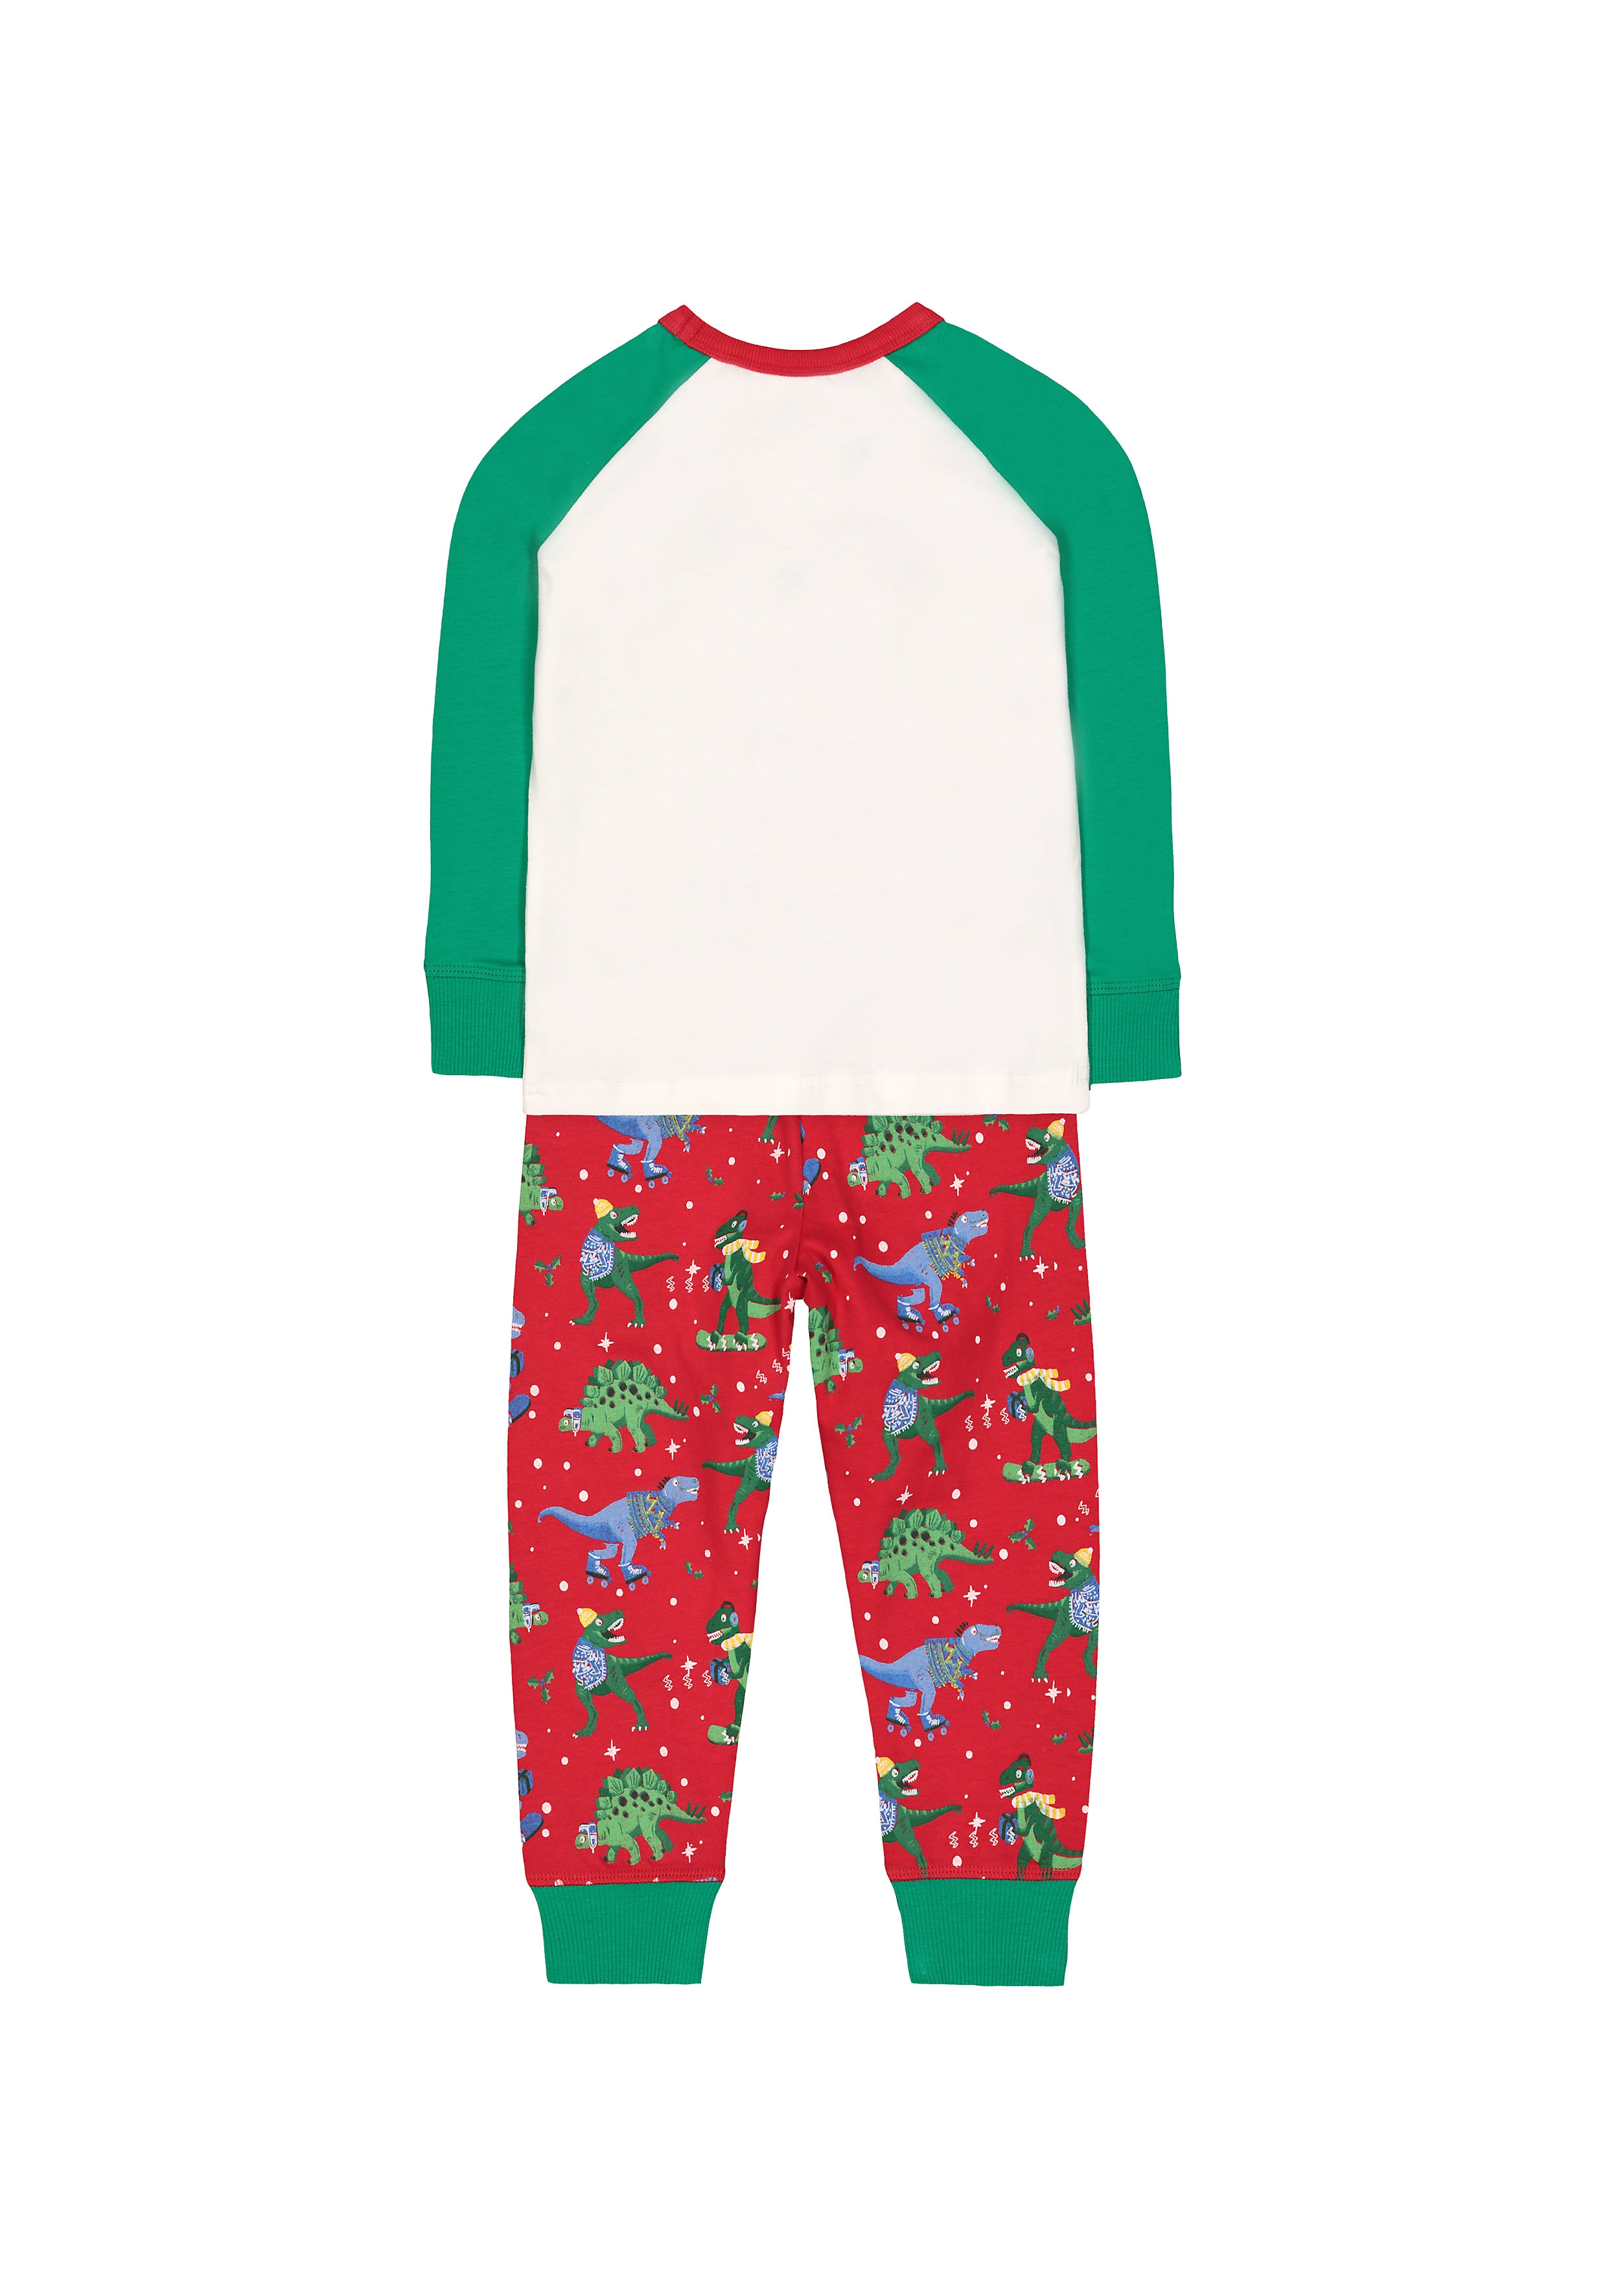 Boys Full Sleeves Pyjama Set Dino Print - Multicolor